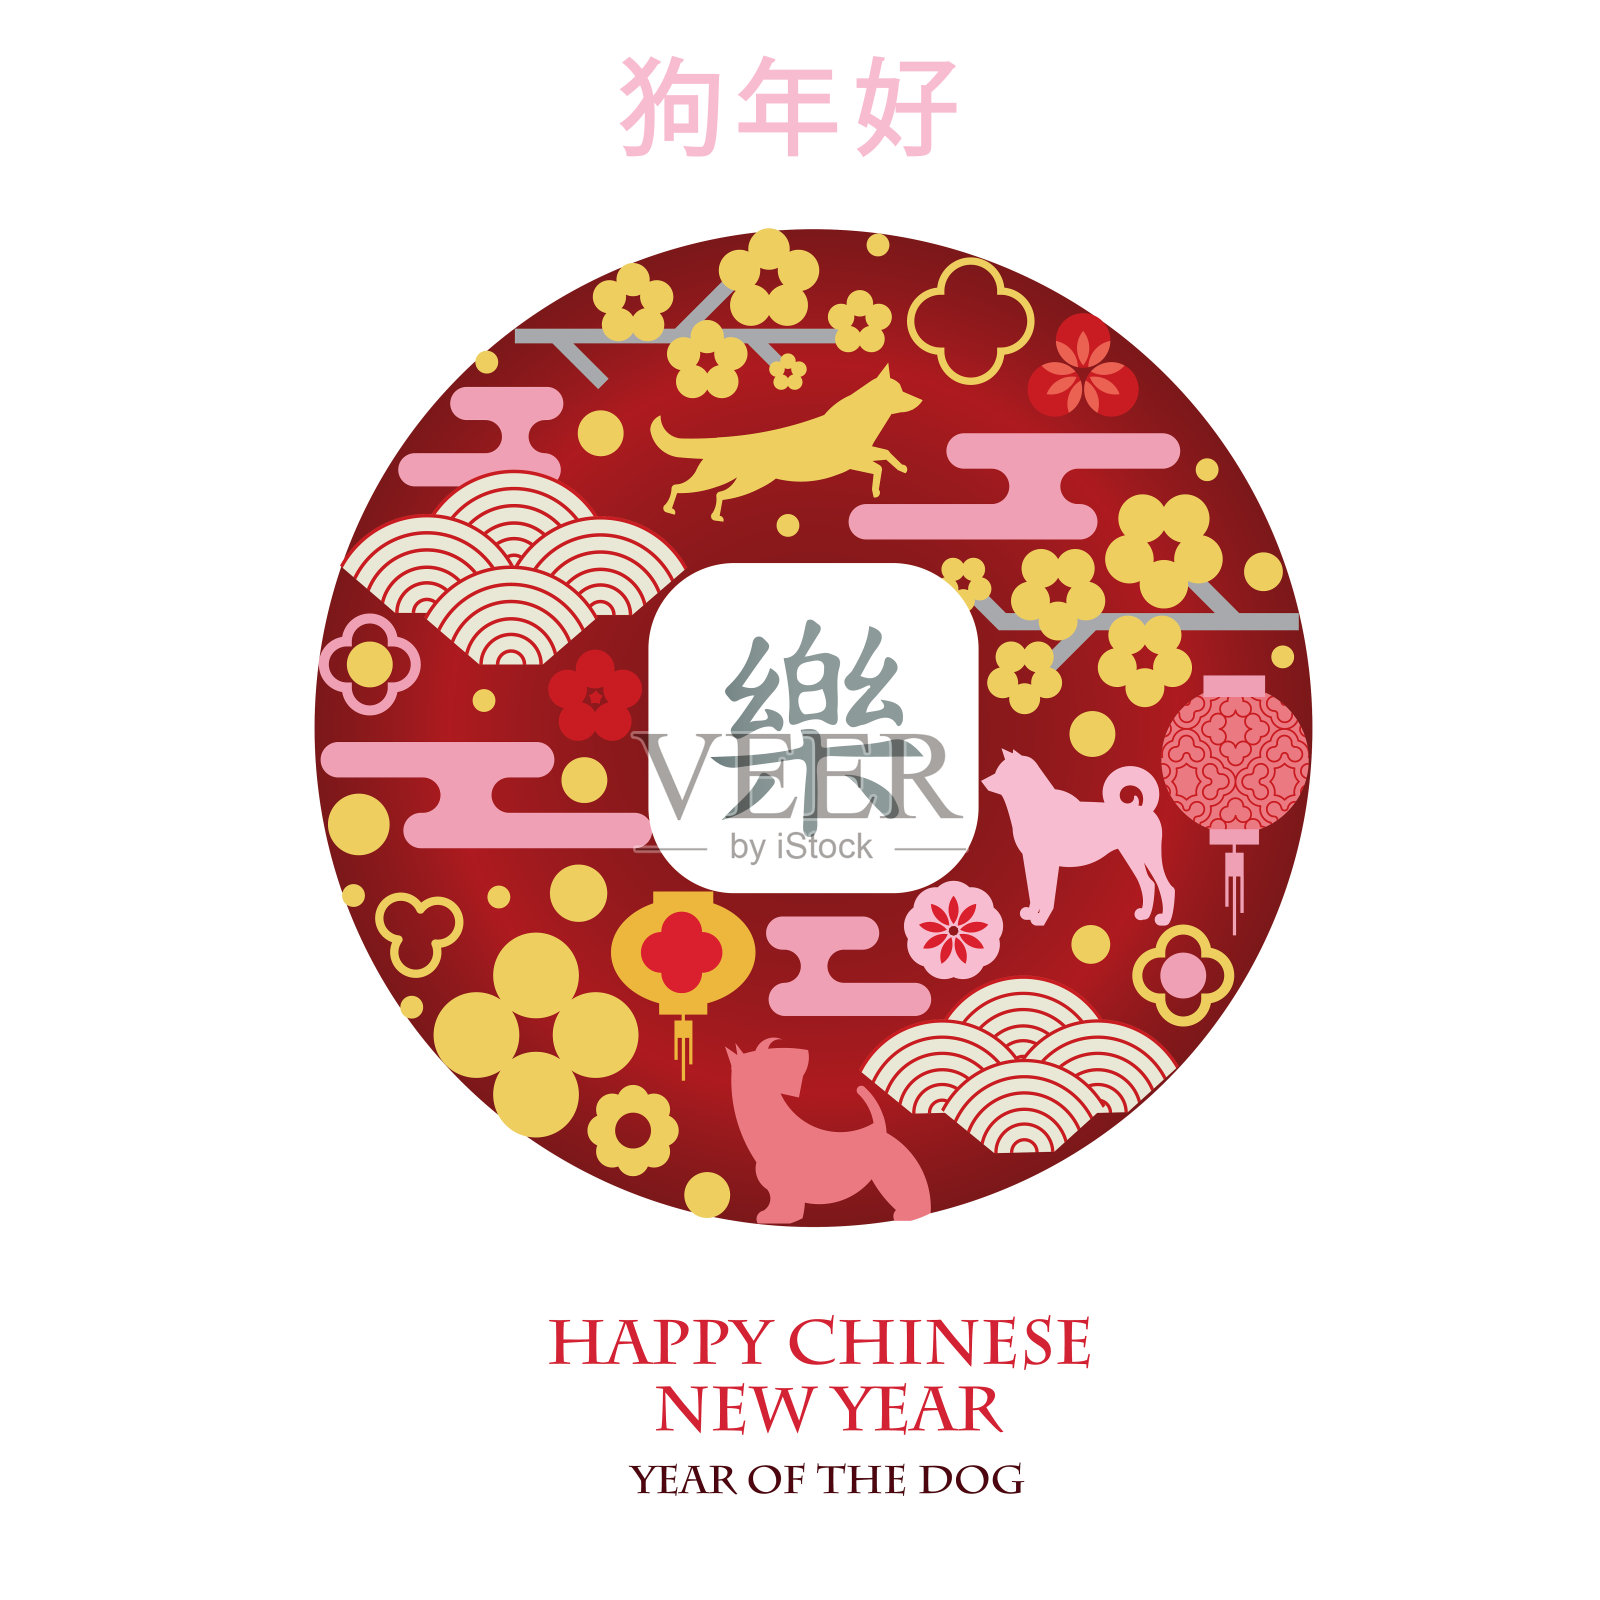 硬币的幸福。2018年中国新年。插画图片素材